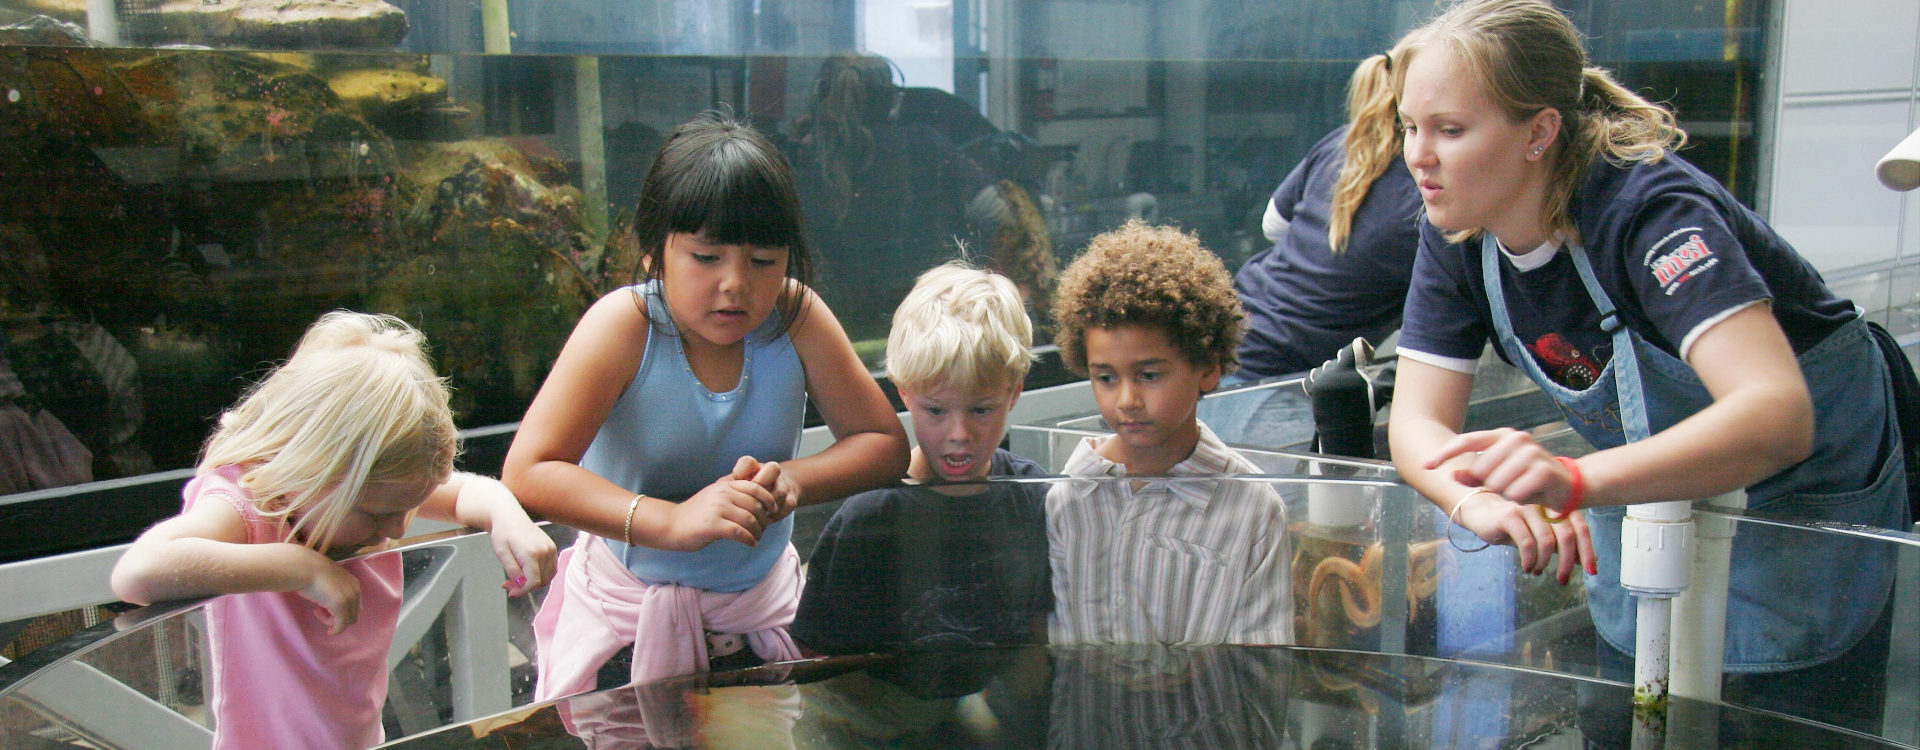 Kindergarten kids around aquarium listen to UCSB undergraduate student